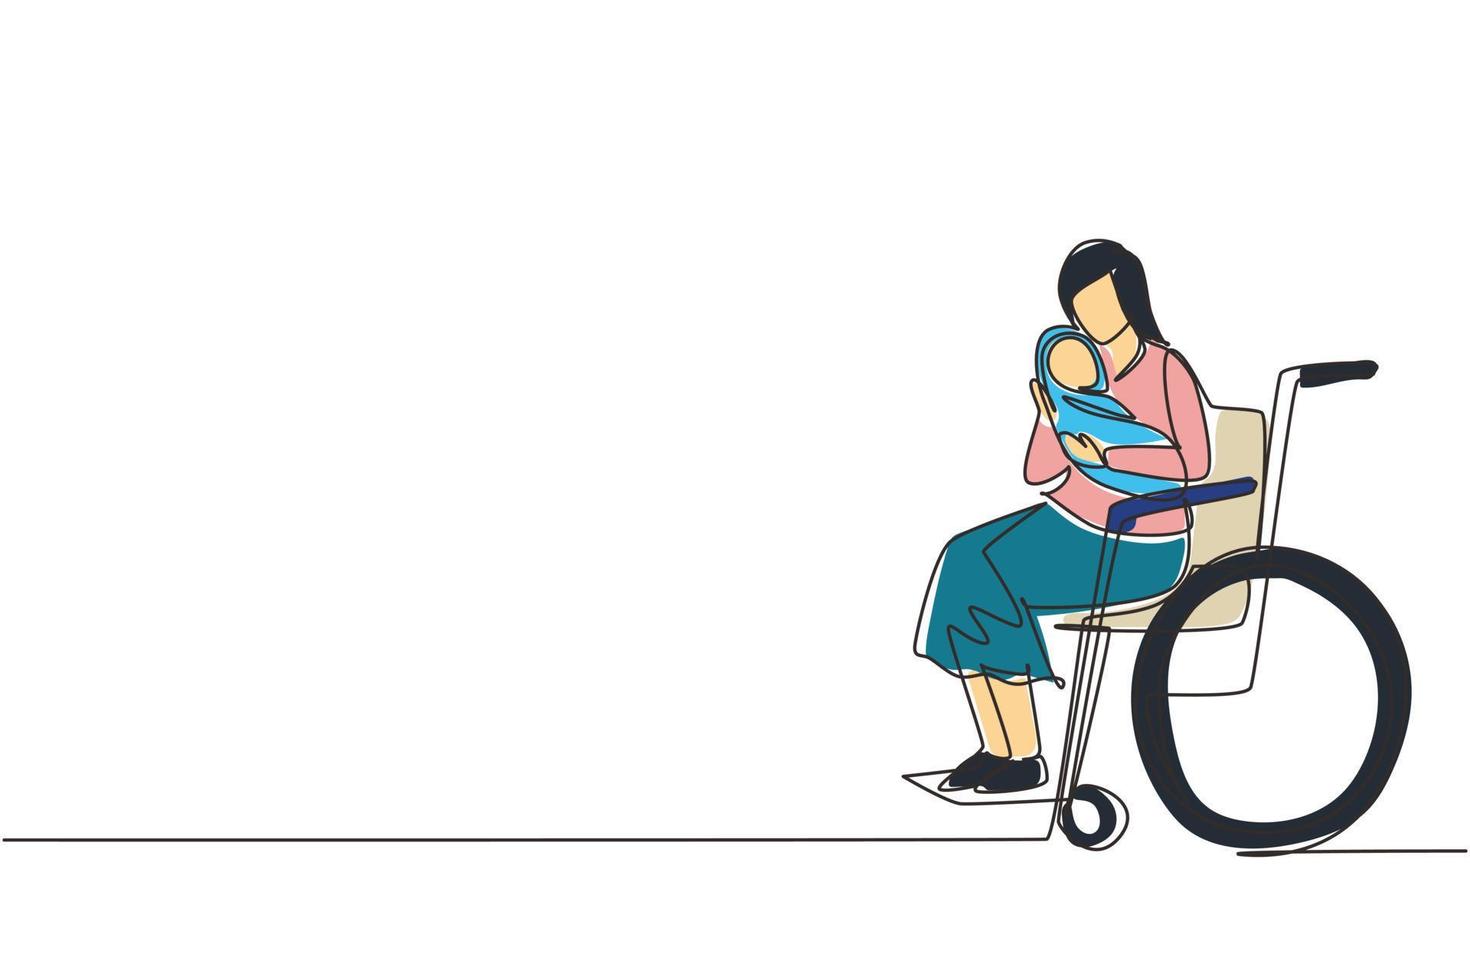 enkele doorlopende lijntekening ouders met pasgeboren baby. vrouw houd baby, zittend in een rolstoel. gehandicapte vrouw met baby in haar armen. familie liefde concept. één lijn tekenen ontwerp vectorillustratie vector